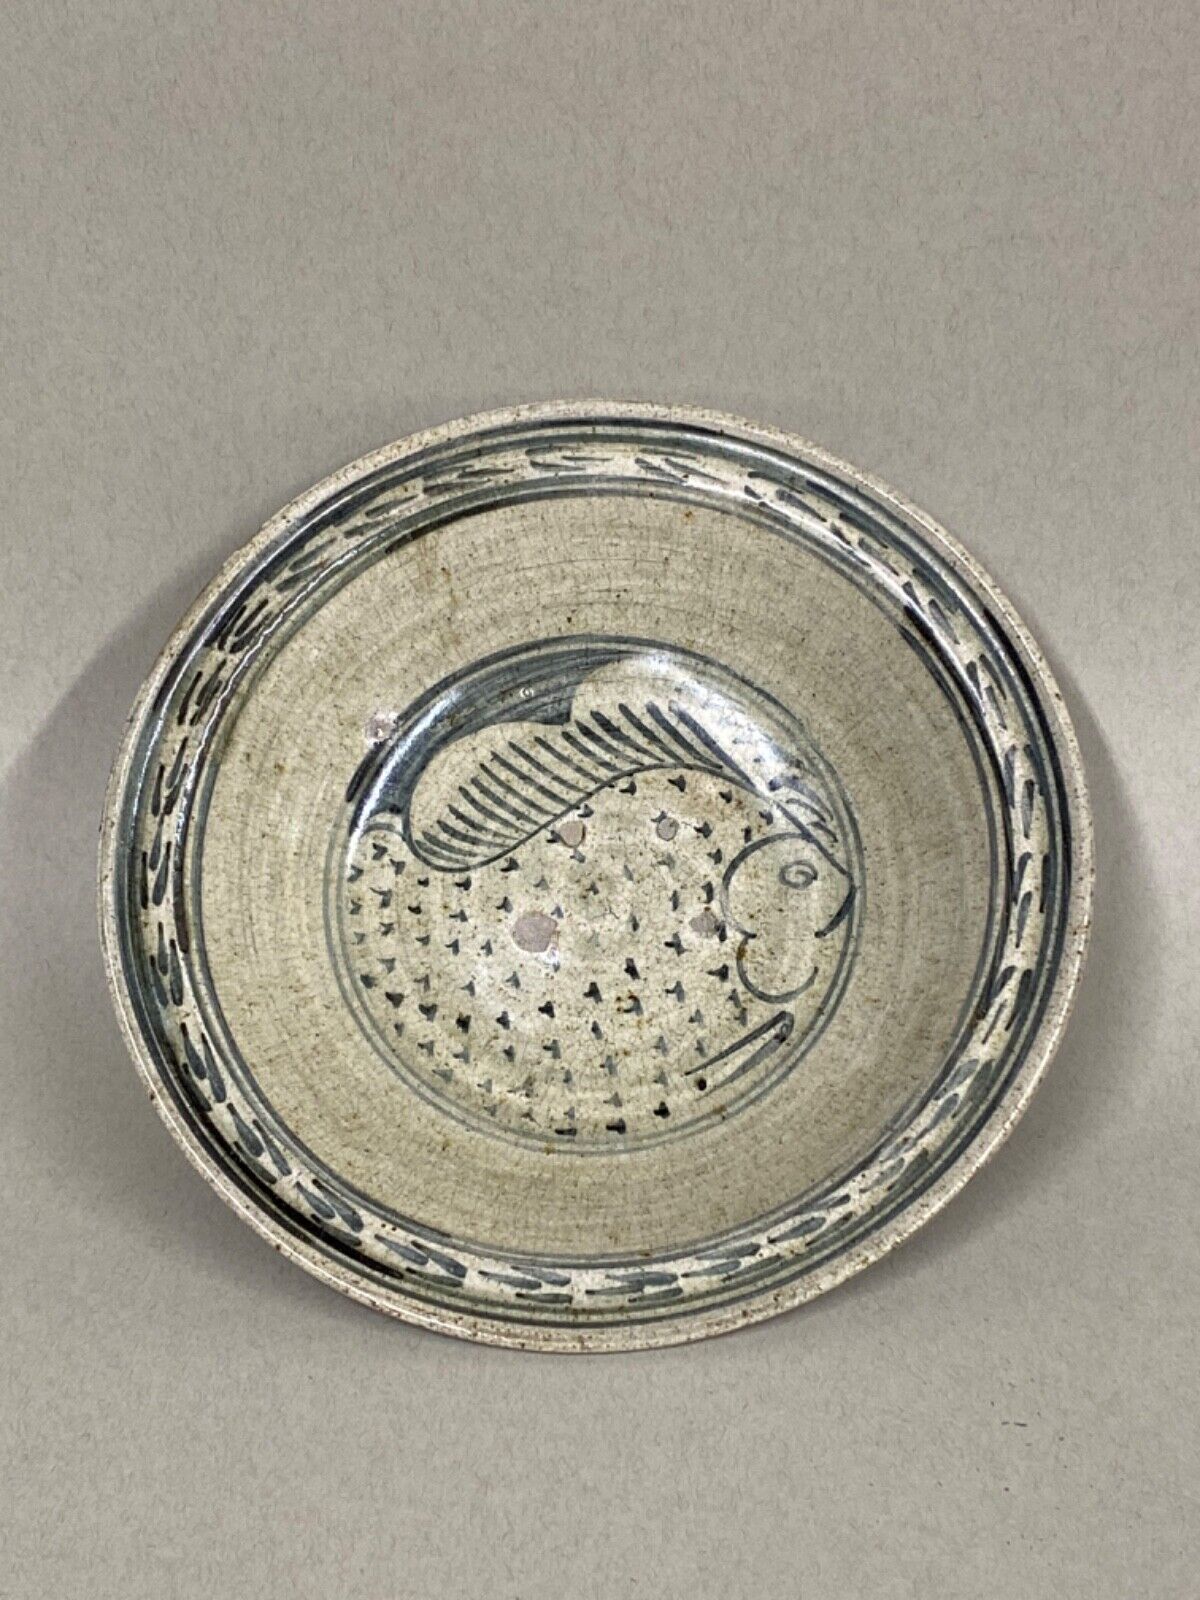 Antique Thai Ceramic Bowl with Fish image, ca 14/15th C; 9 5/8 x 2 1/2”